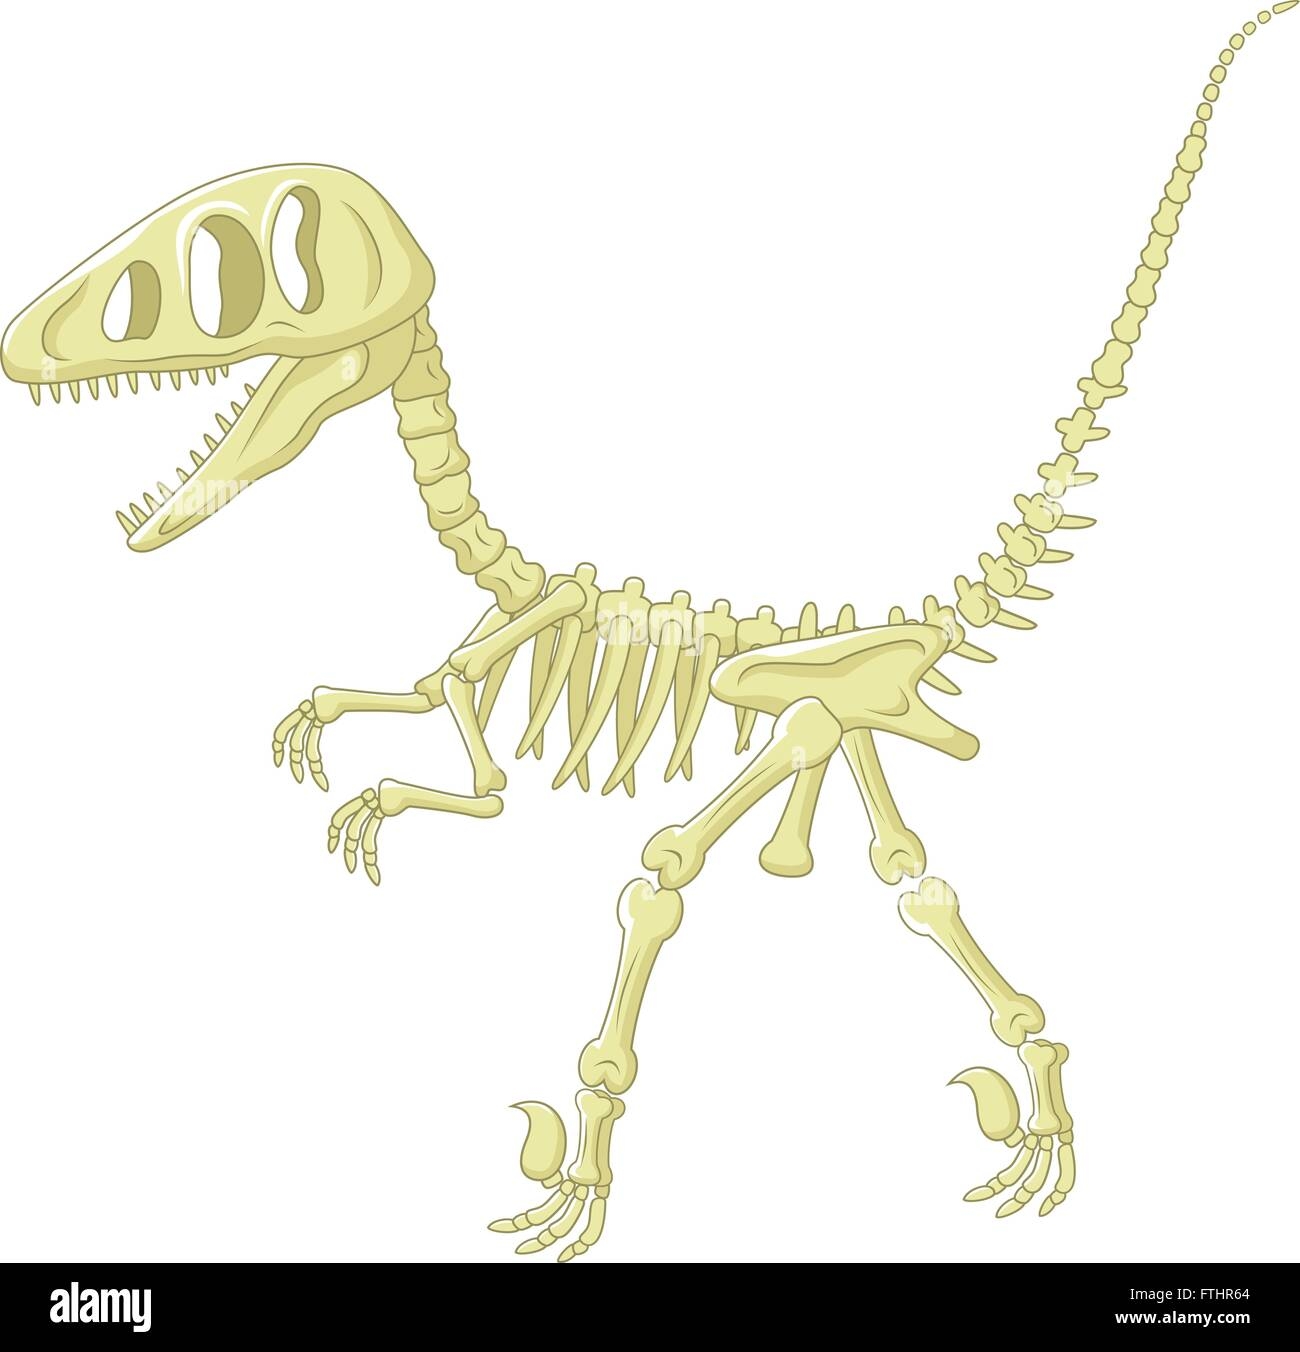 Скелет динозавра рисунок для детей